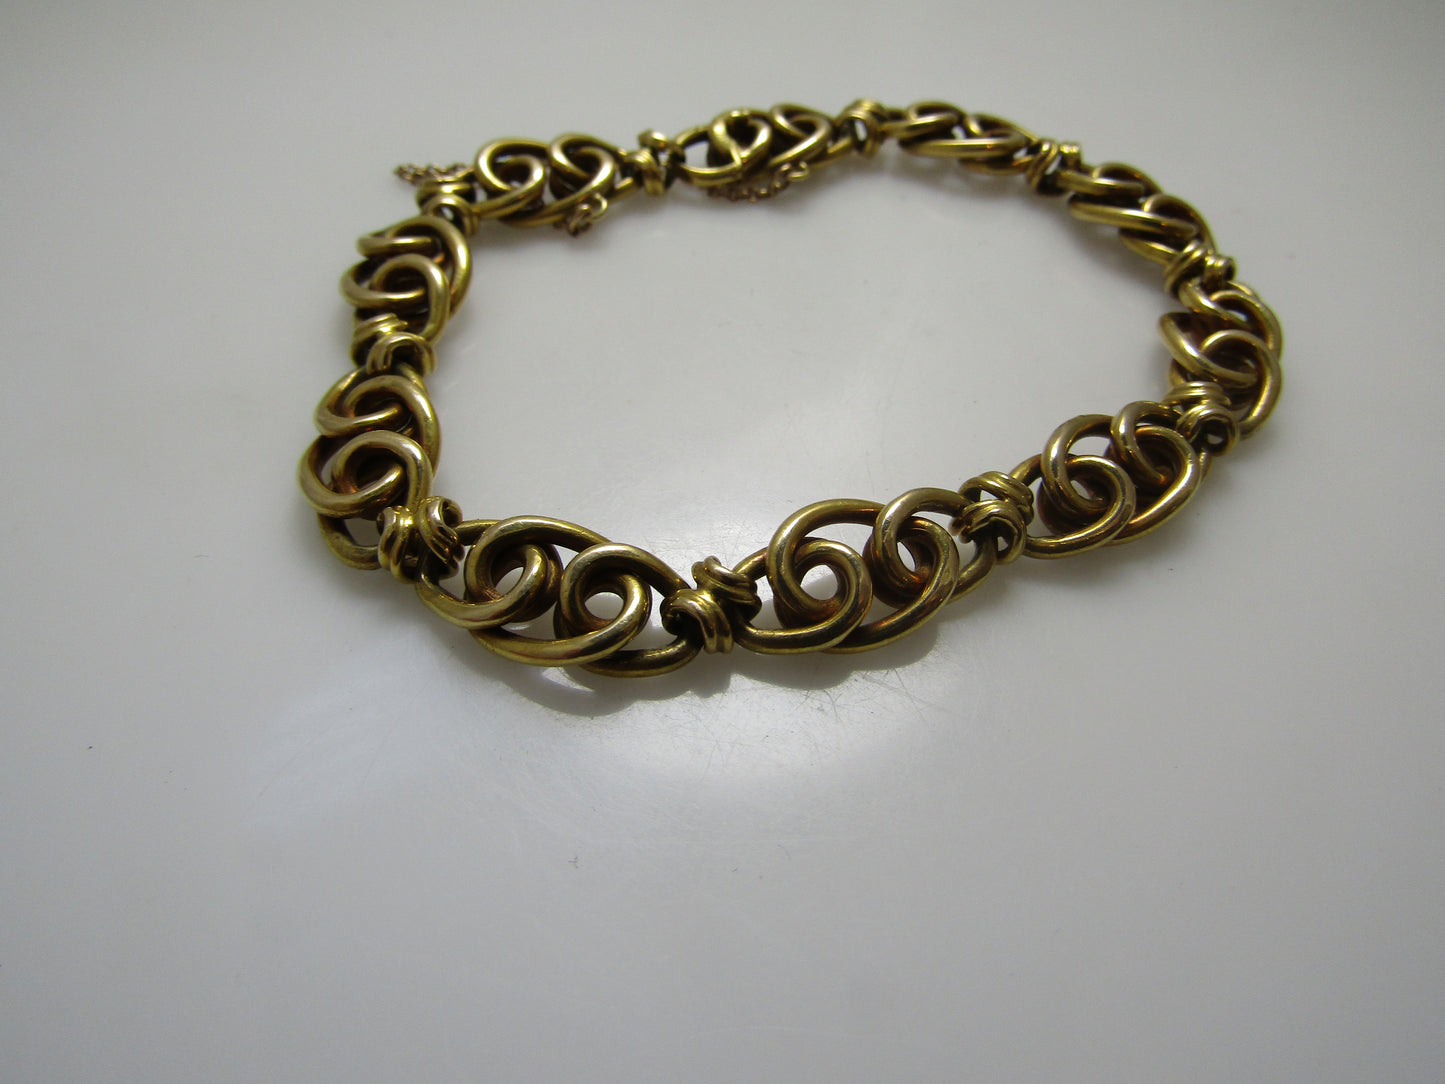 Antique French 18k link bracelet